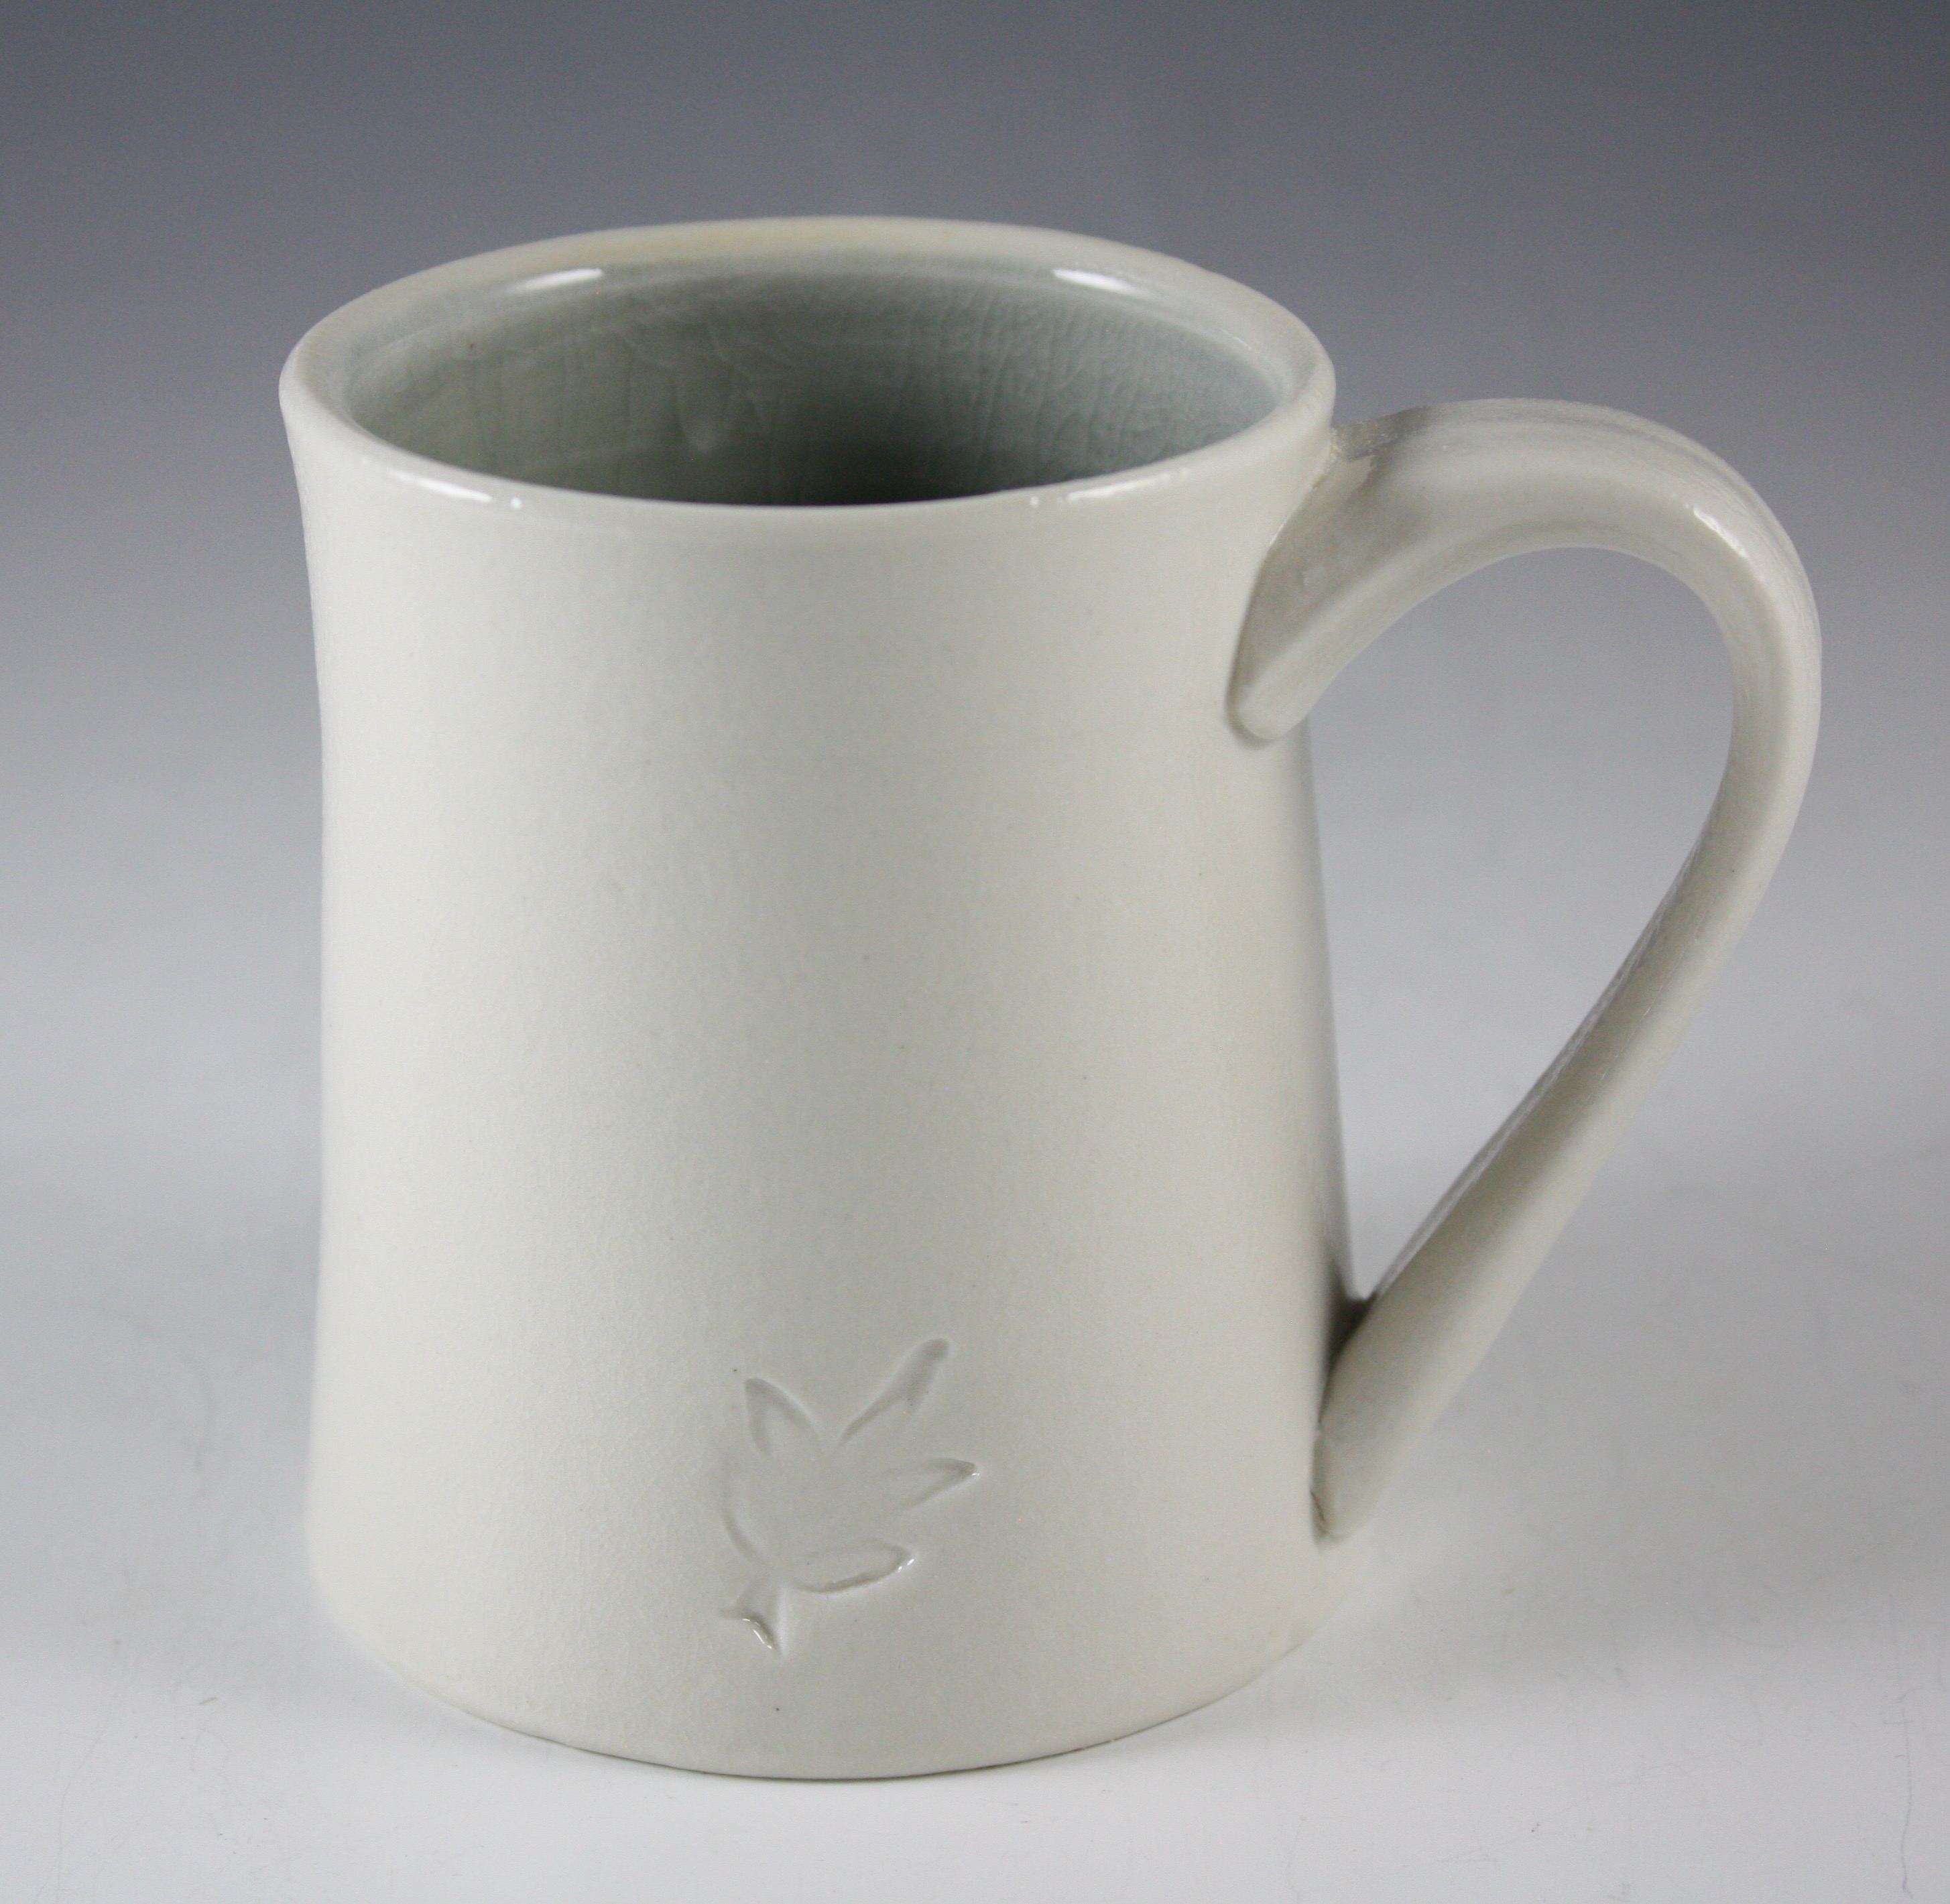 Porcelain Mug with Leaf Stamp Design 21-287